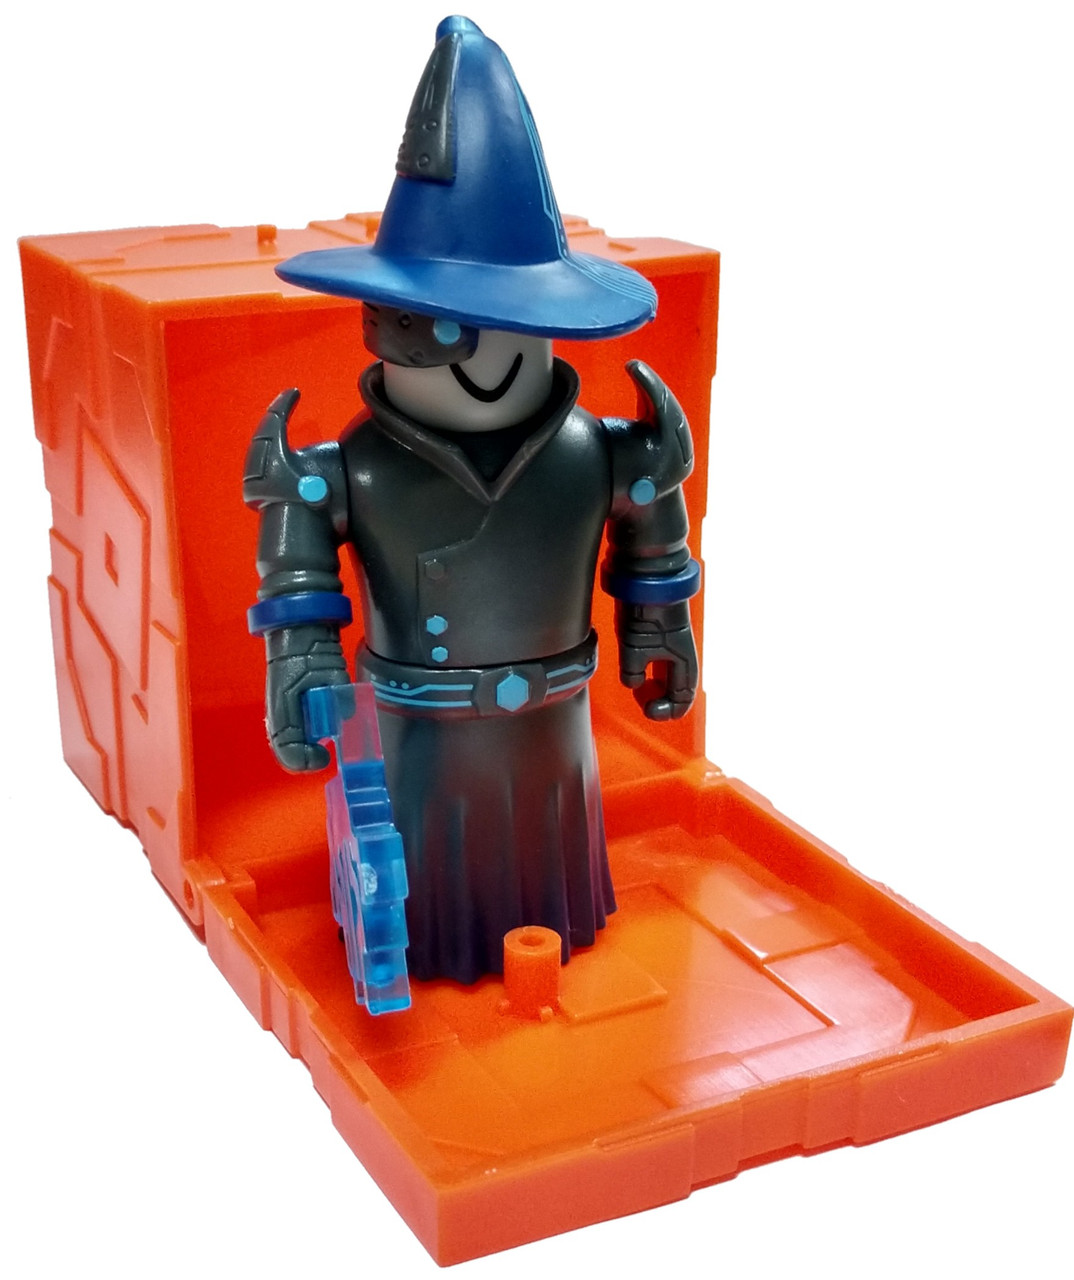 Roblox Series 6 Techno Wizard 3 Mini Figure With Orange Cube And